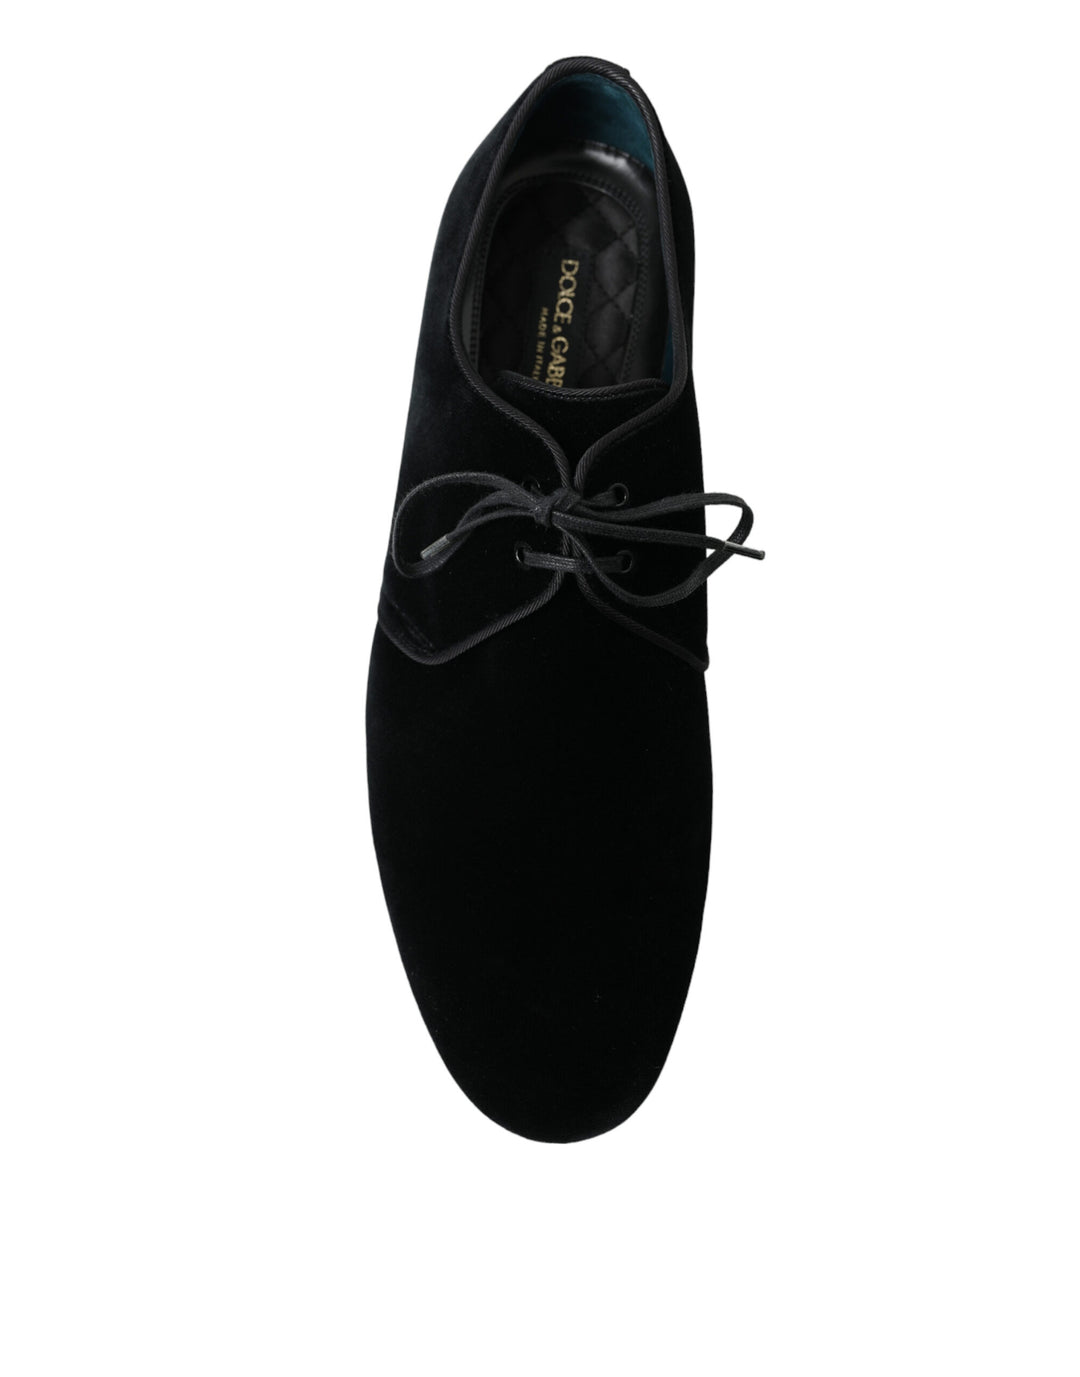 Dolce & Gabbana Elegant Black Velvet Derby Dress Shoes